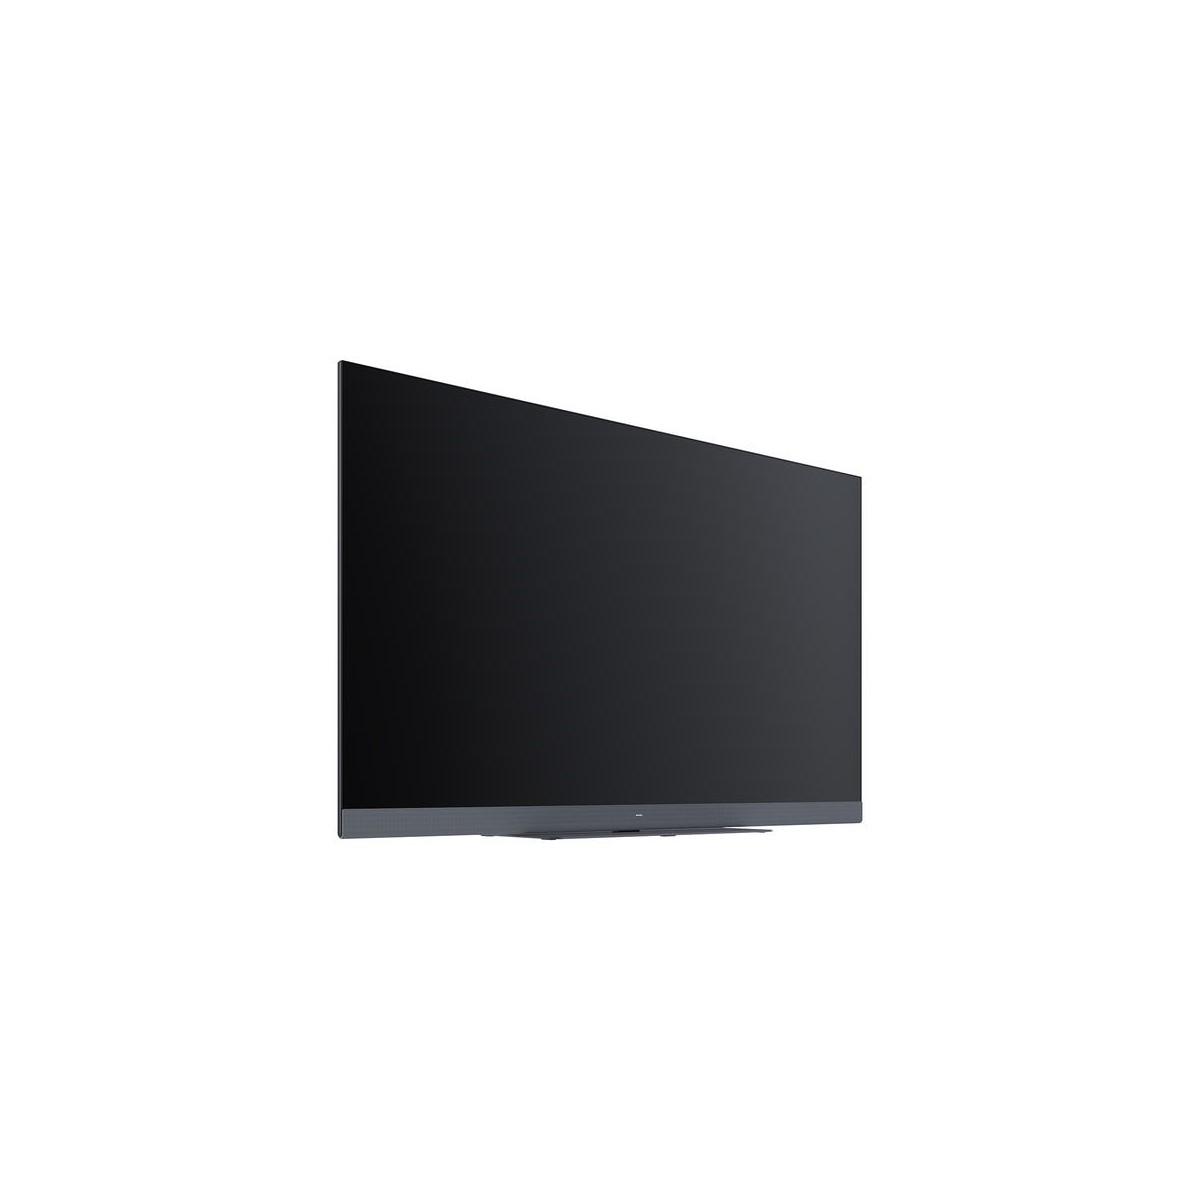 LCD 4K 55" TV We. SEE 55 GREY